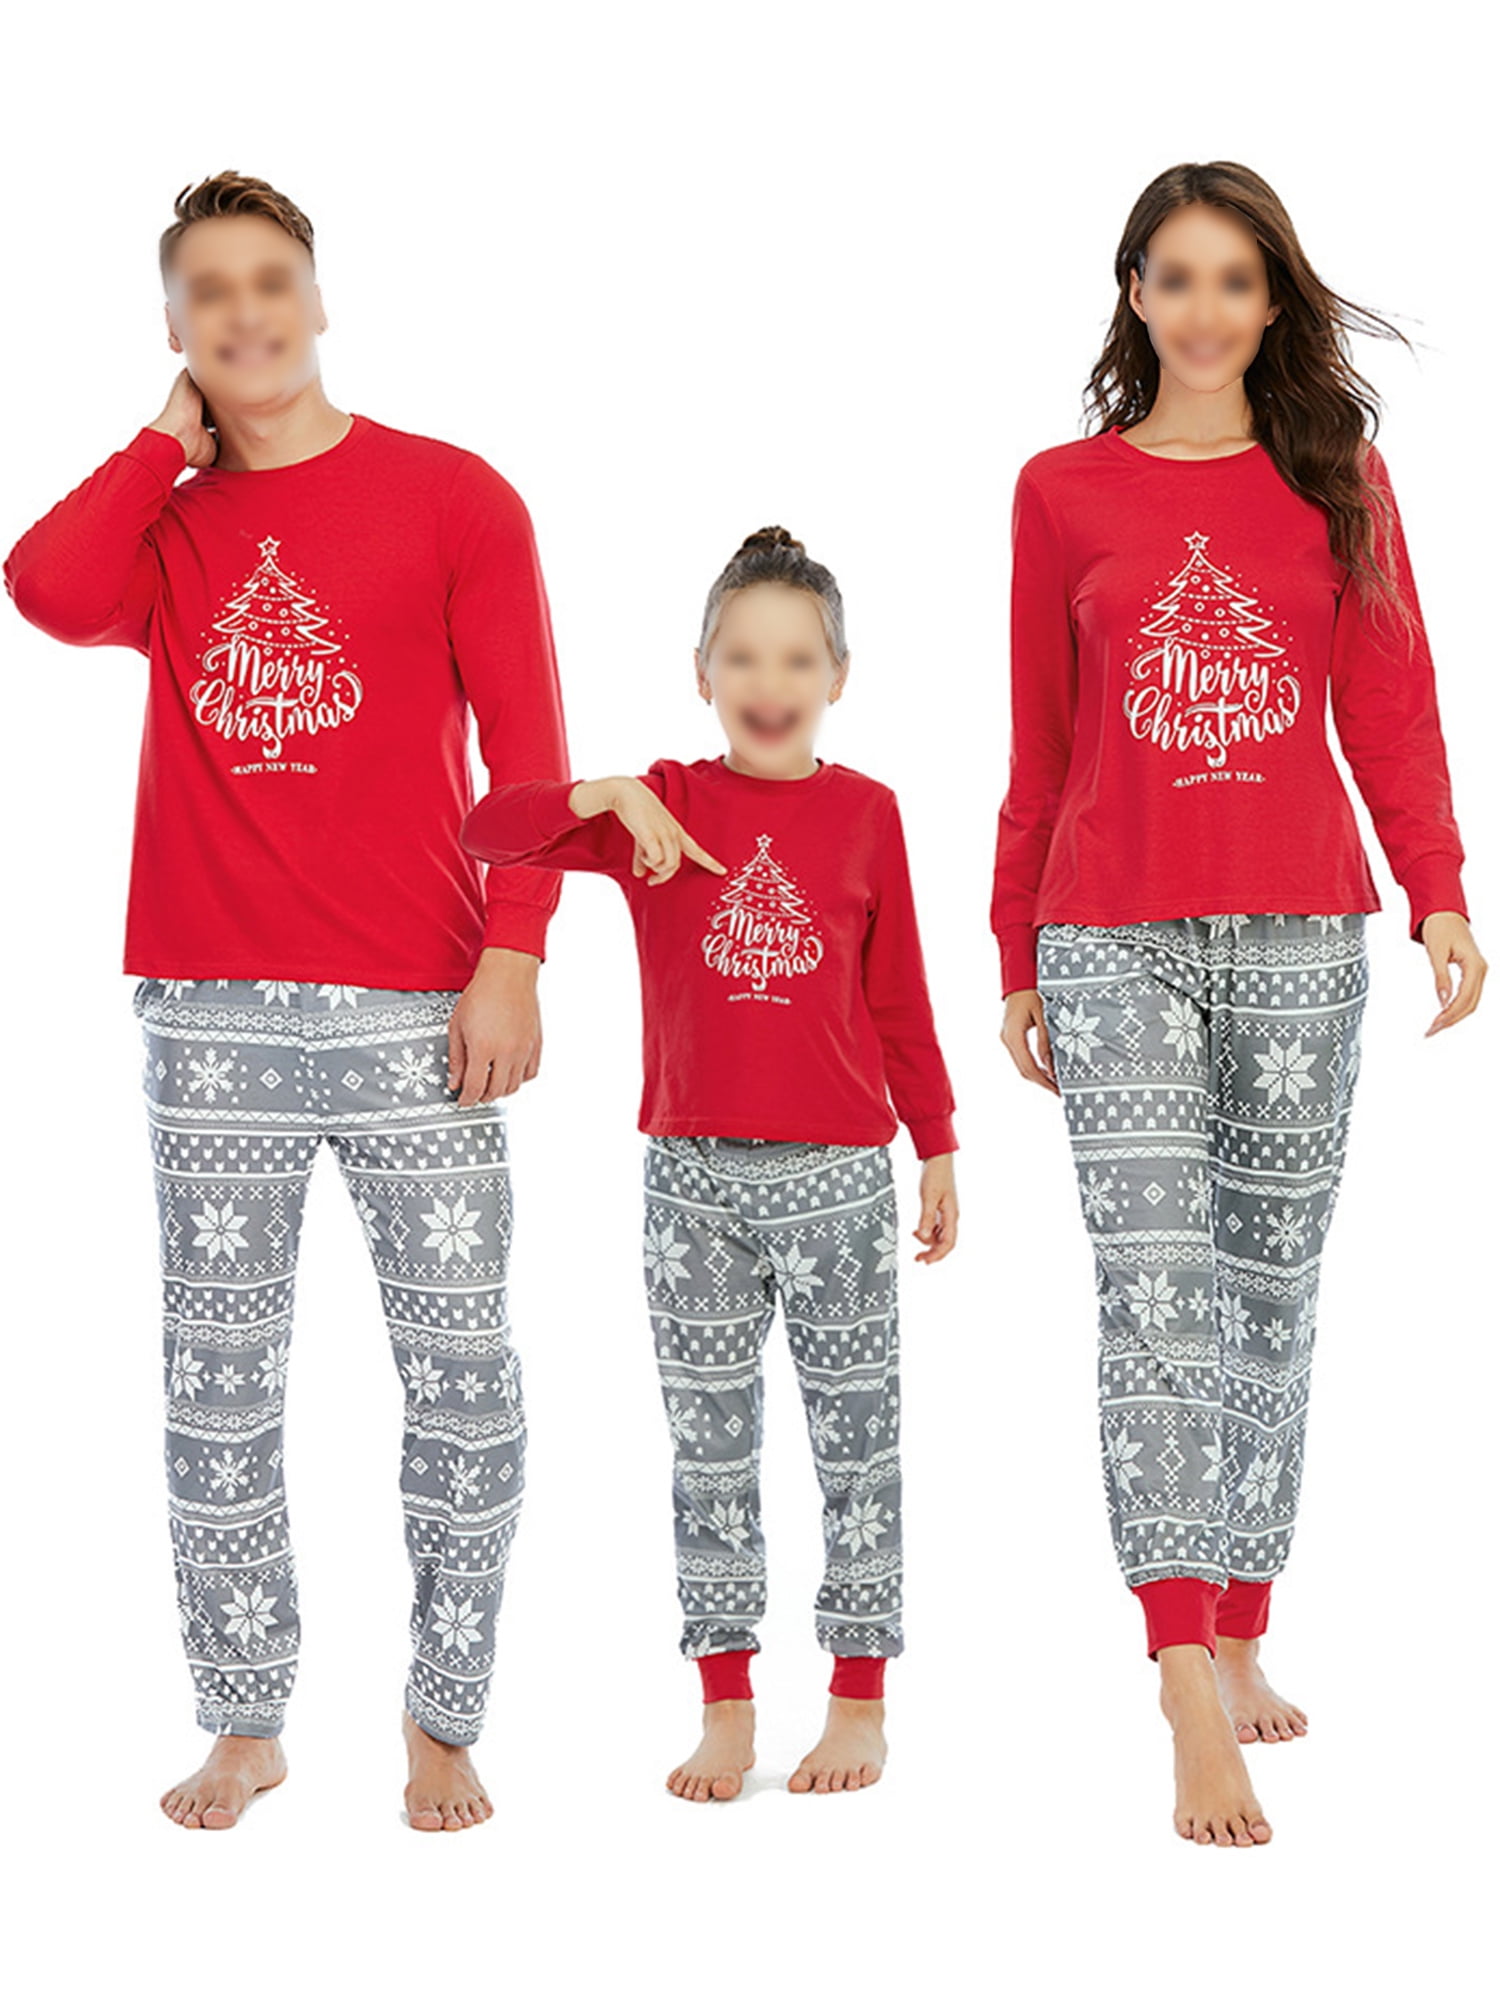 Christmas Red Pyjamas Pajamas Xmas Family Matching Sleepwear Pants Tops PJs Sets